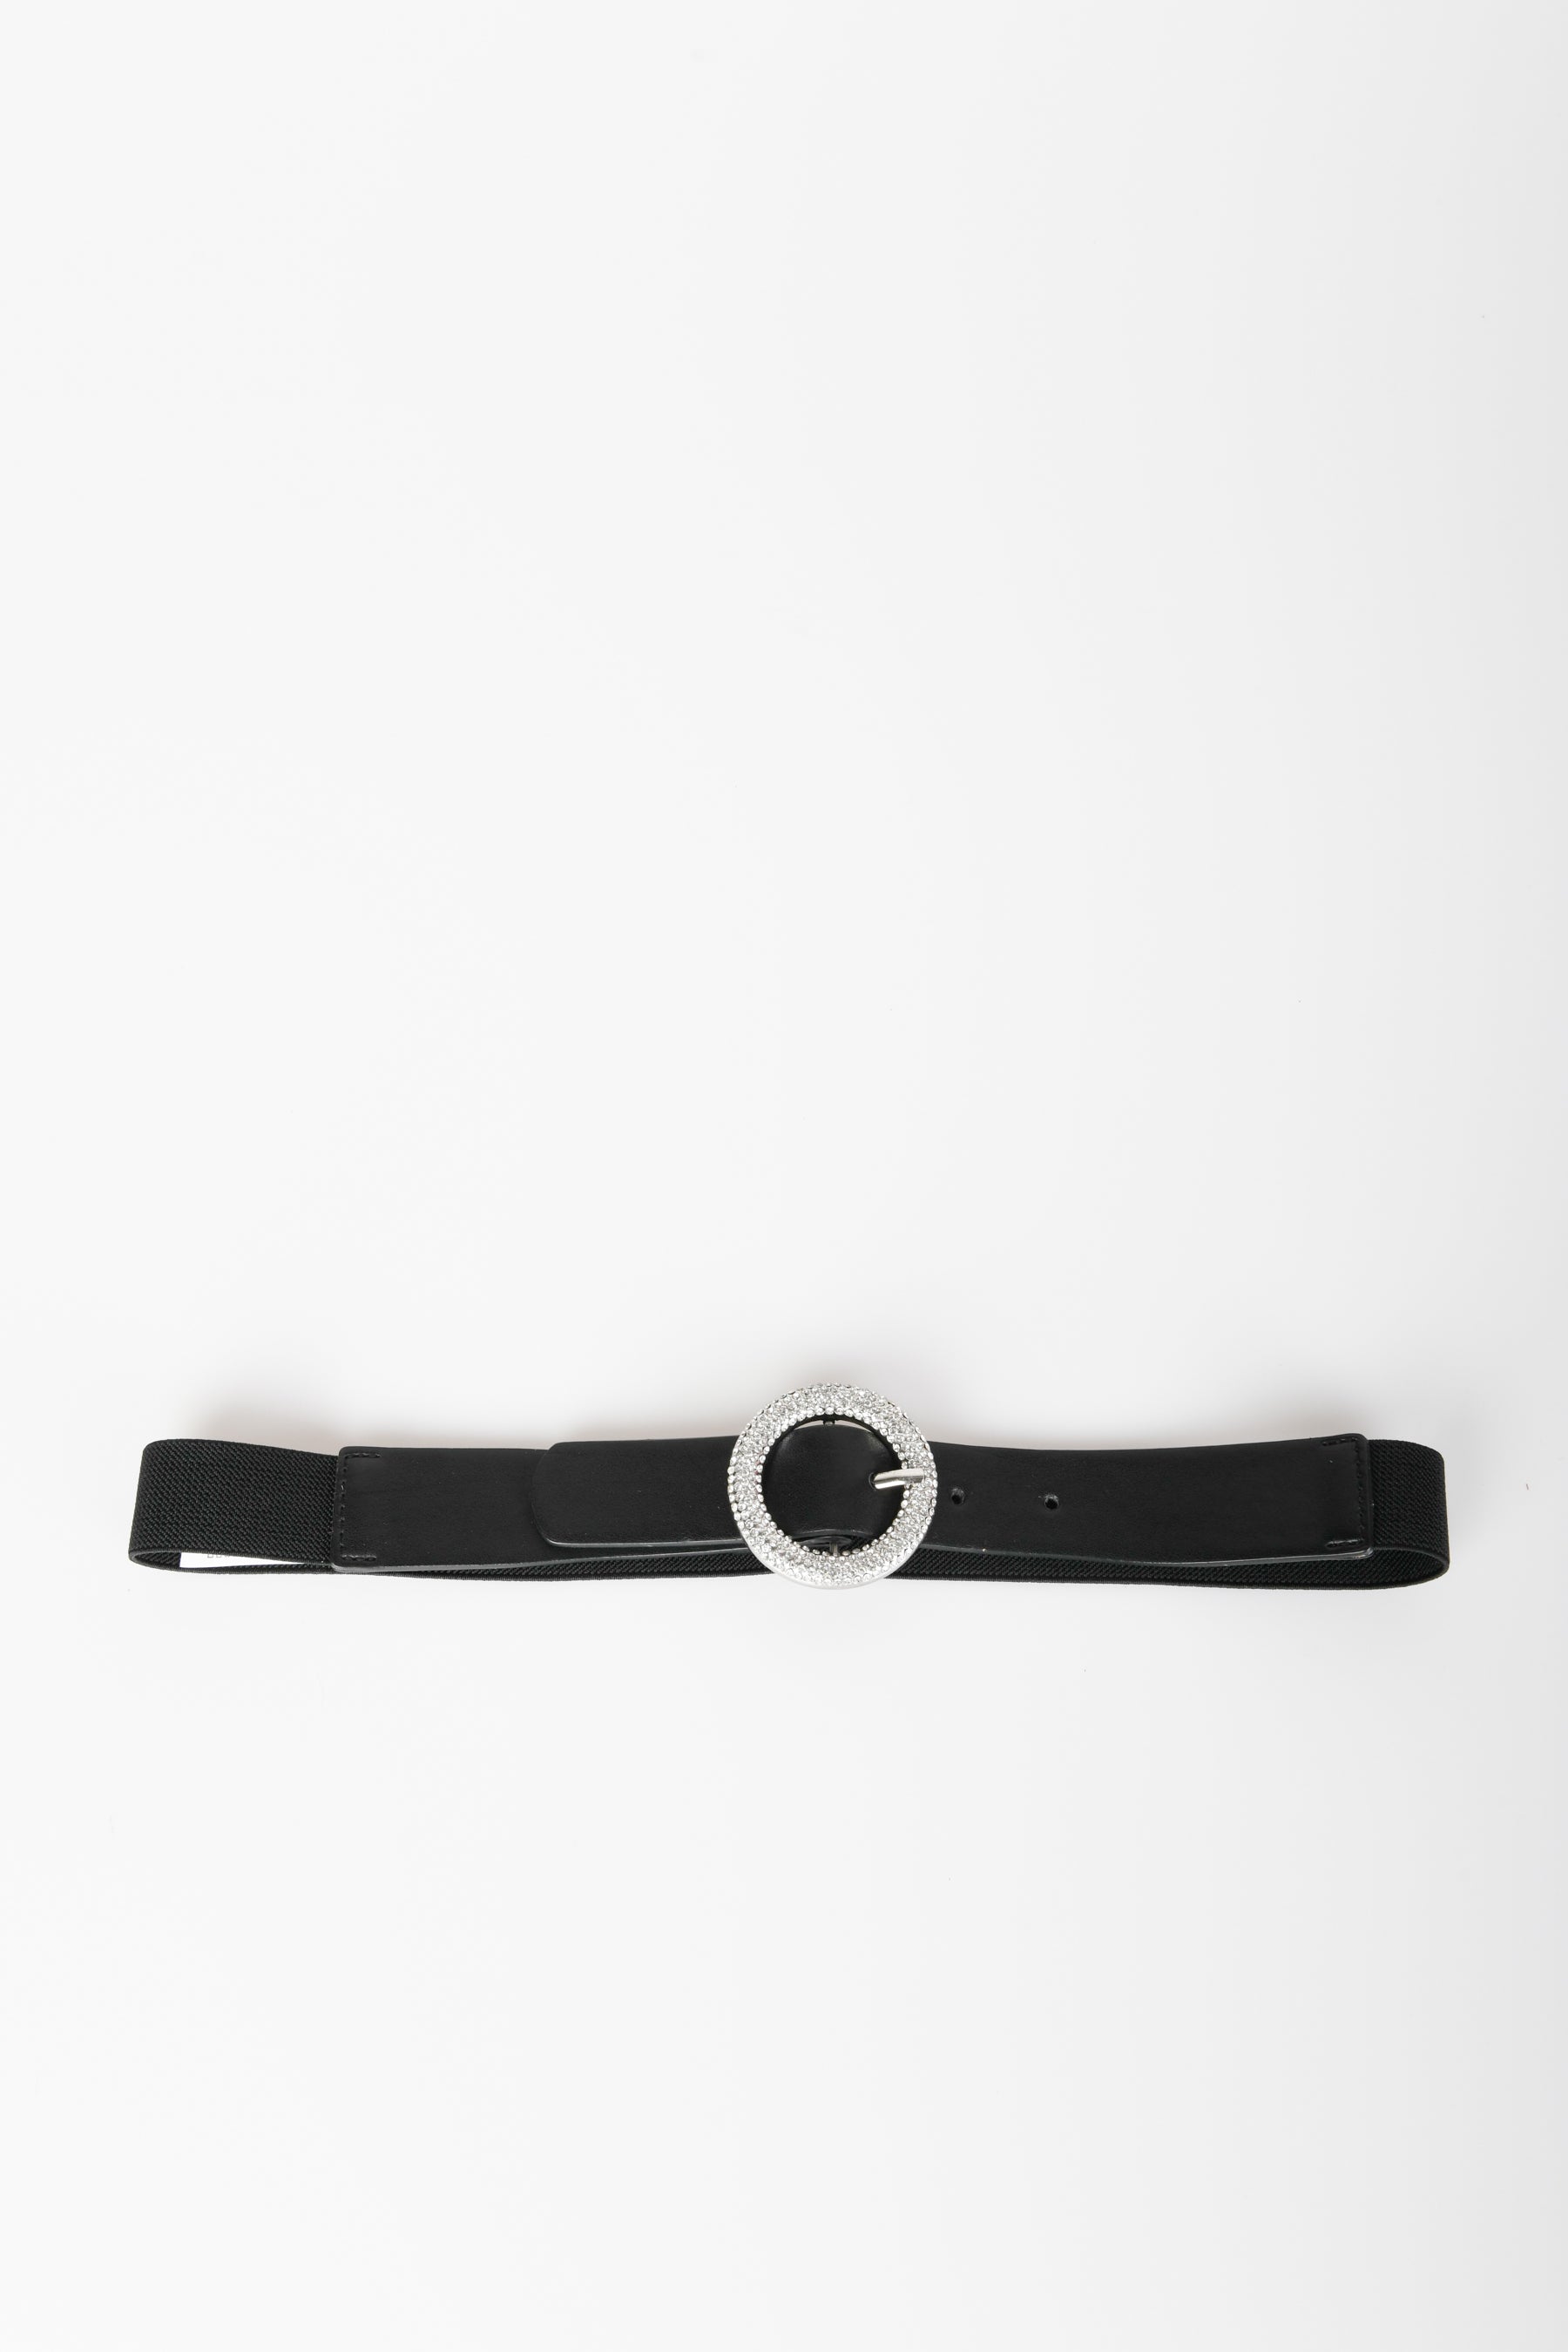 Nuna Lie - Cintura elastica con fibbia tonda - UN